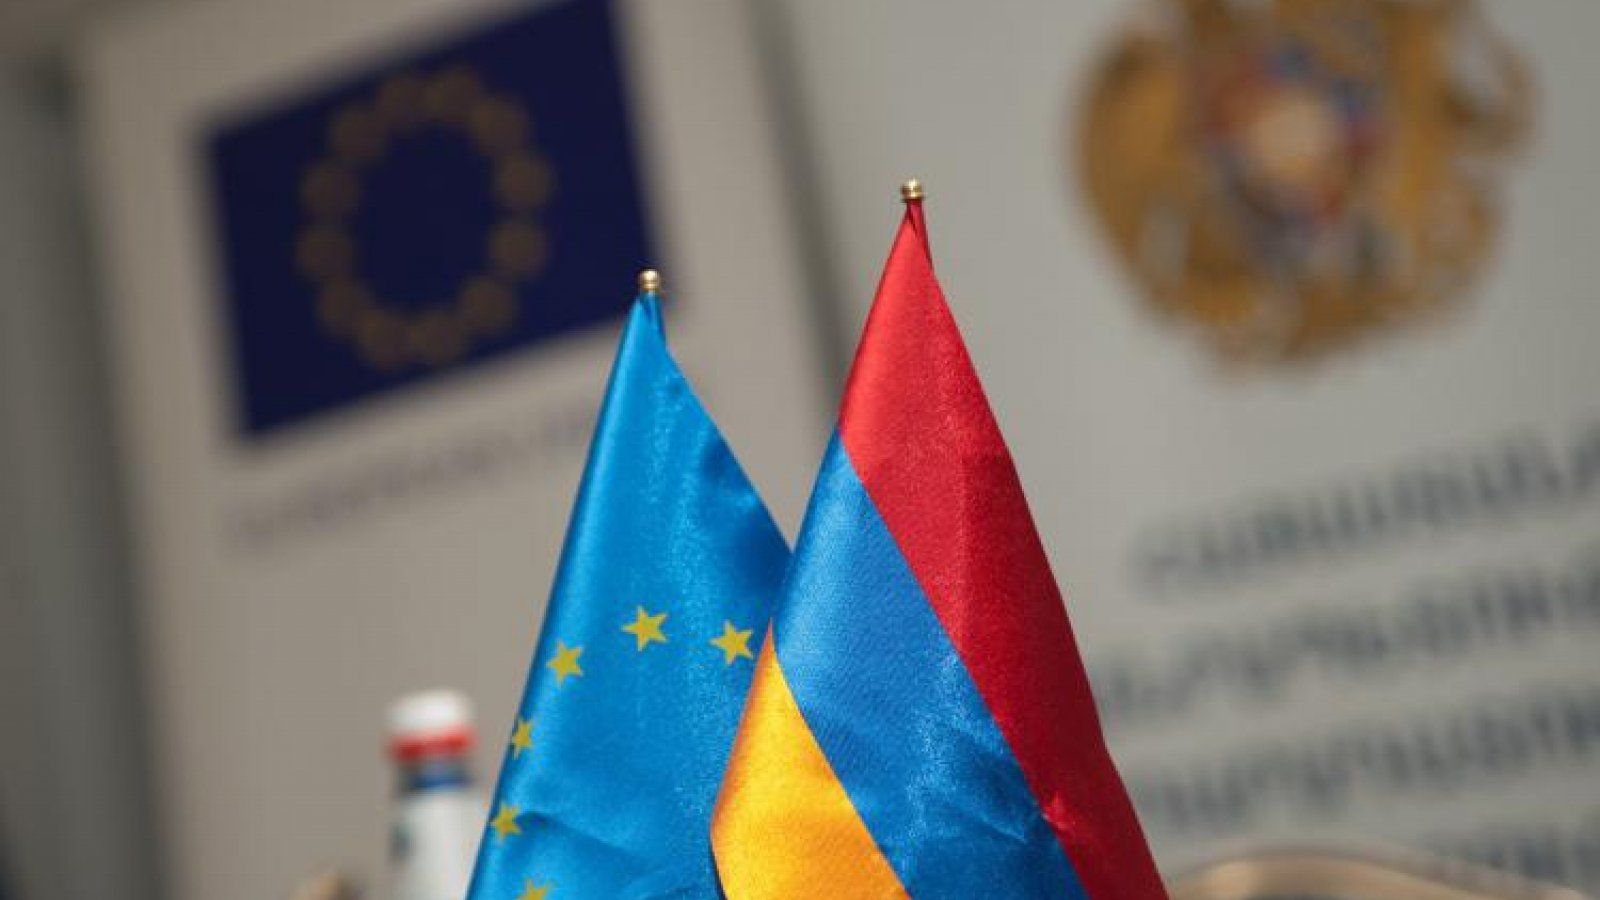 Армения вступит в ес. ЕС Армения флаг. Флаг Армении и Евросоюза. Армения и ЕС фото. Представитель Армении в ЕС.